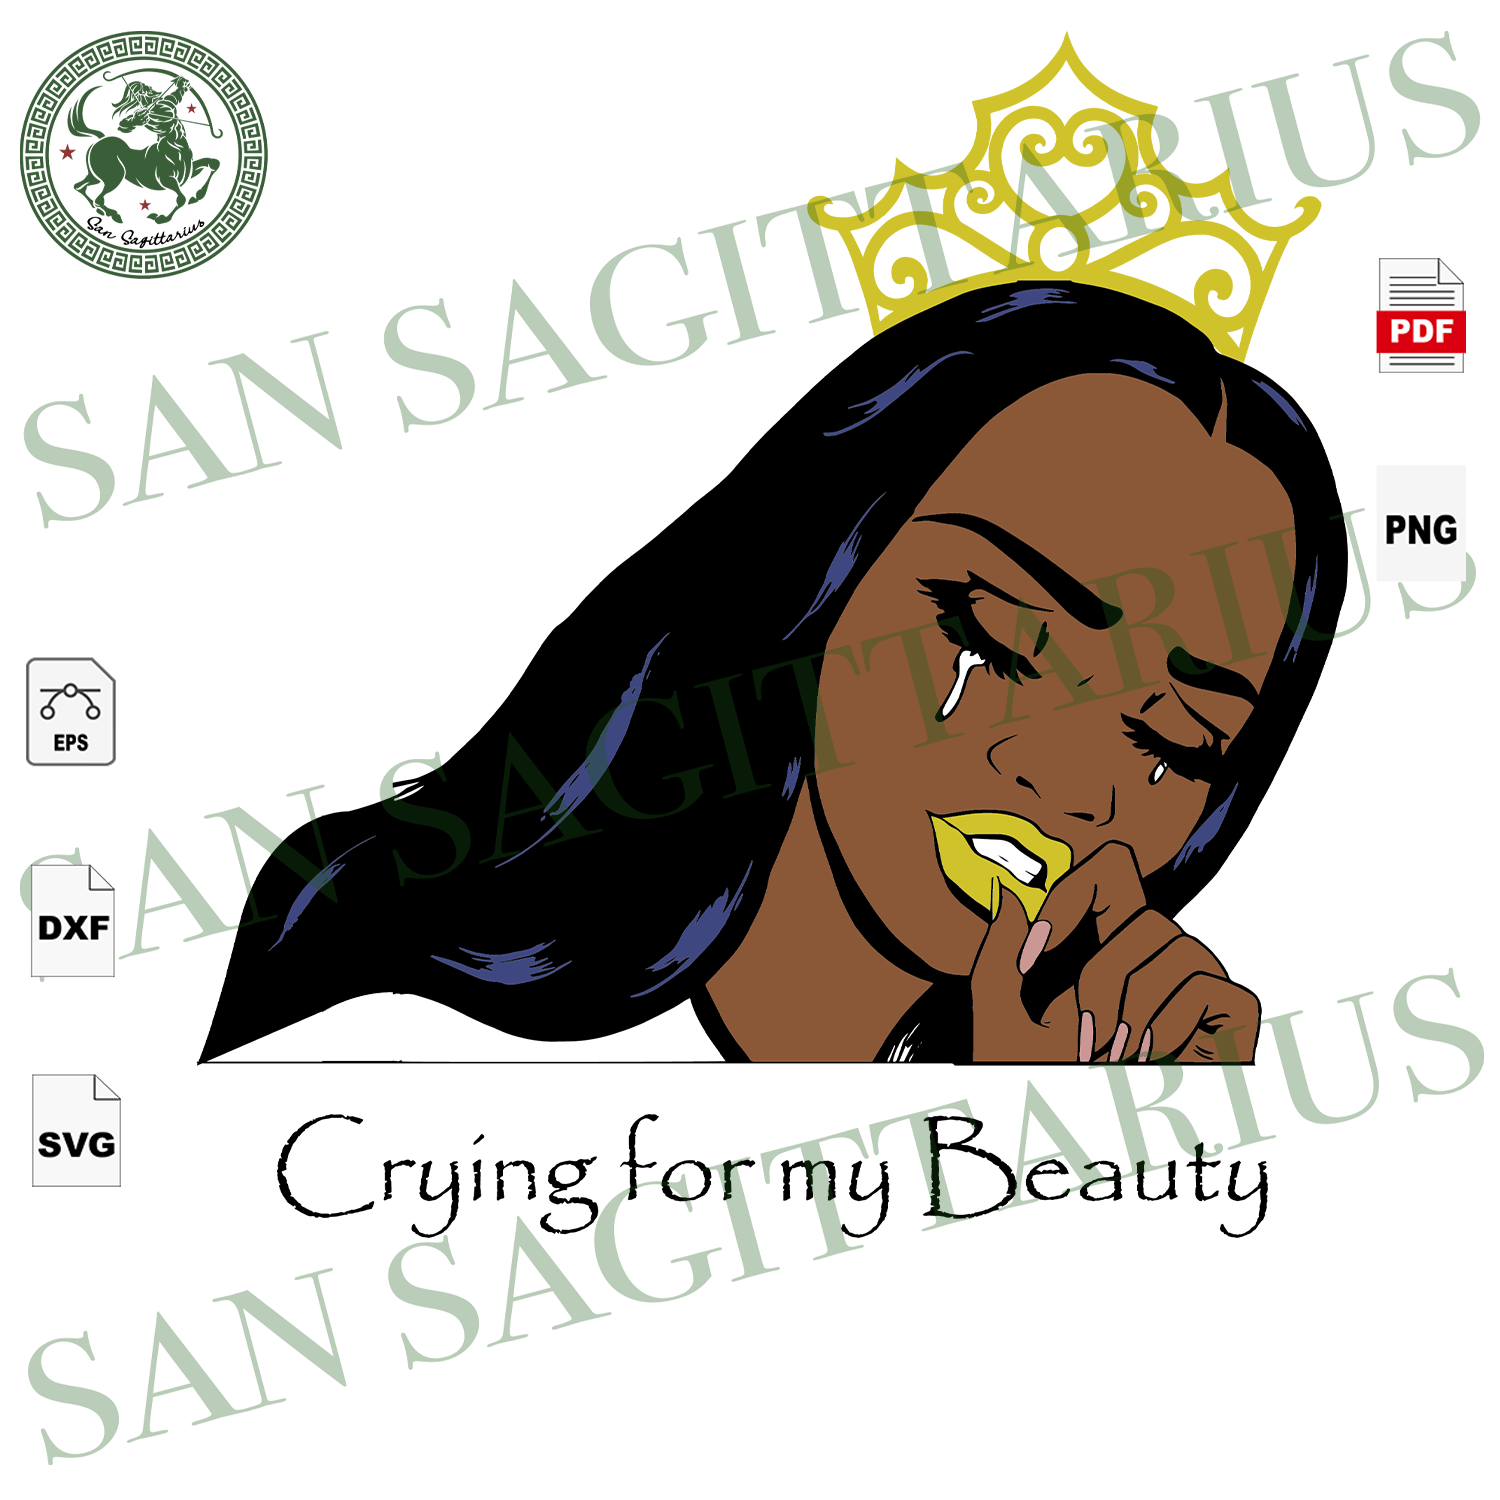 Download Crying Black Girl Svg Black Lives Matter Black Women Svg Black Hist San Sagittarius